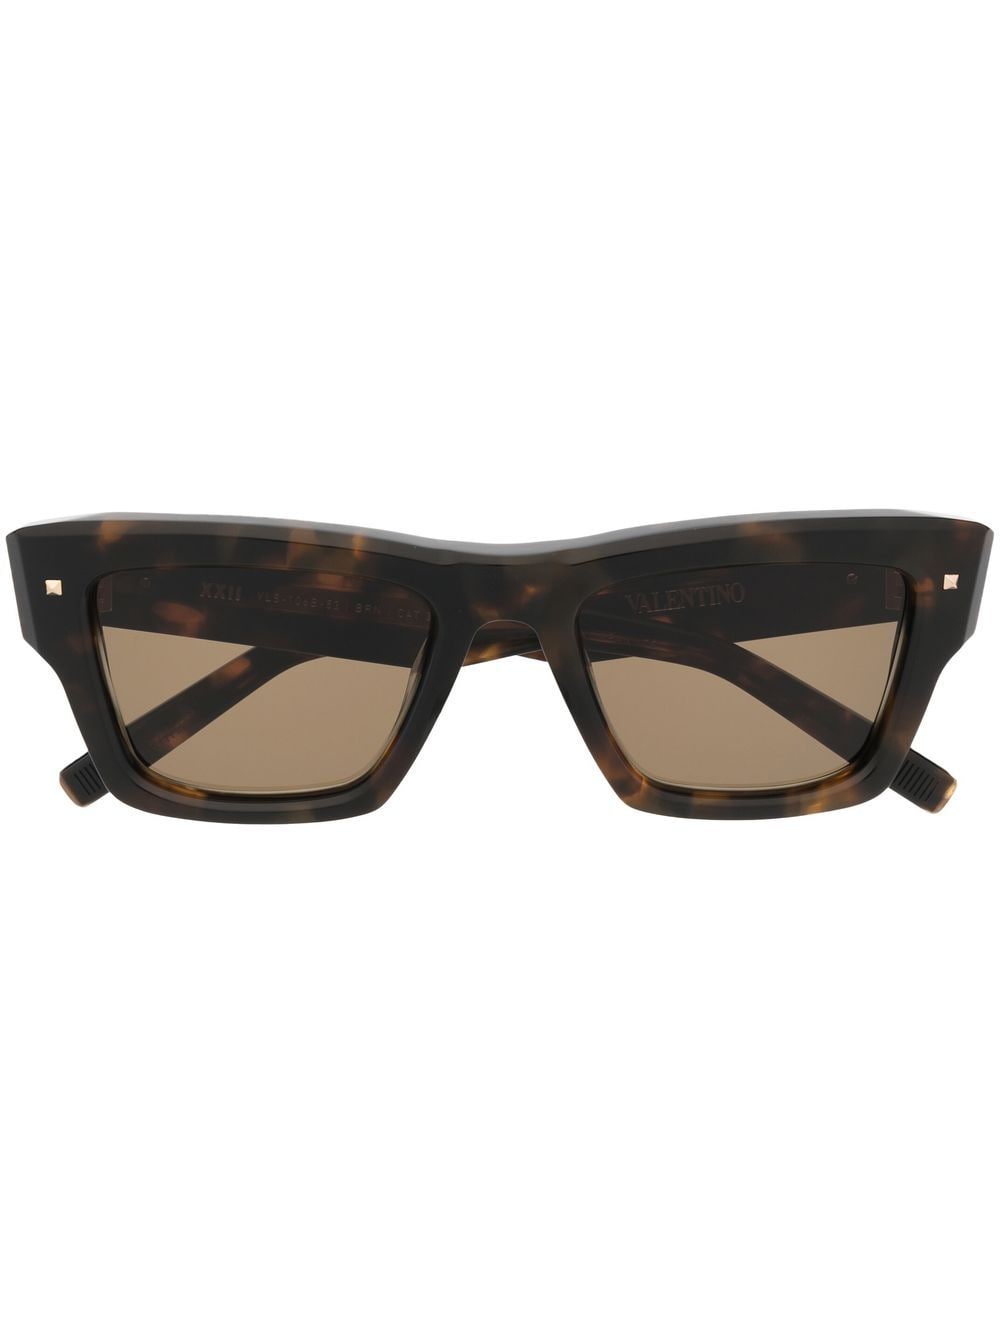 Valentino Eyewear Sonnenbrille mit eckigem Gestell - Braun von Valentino Eyewear